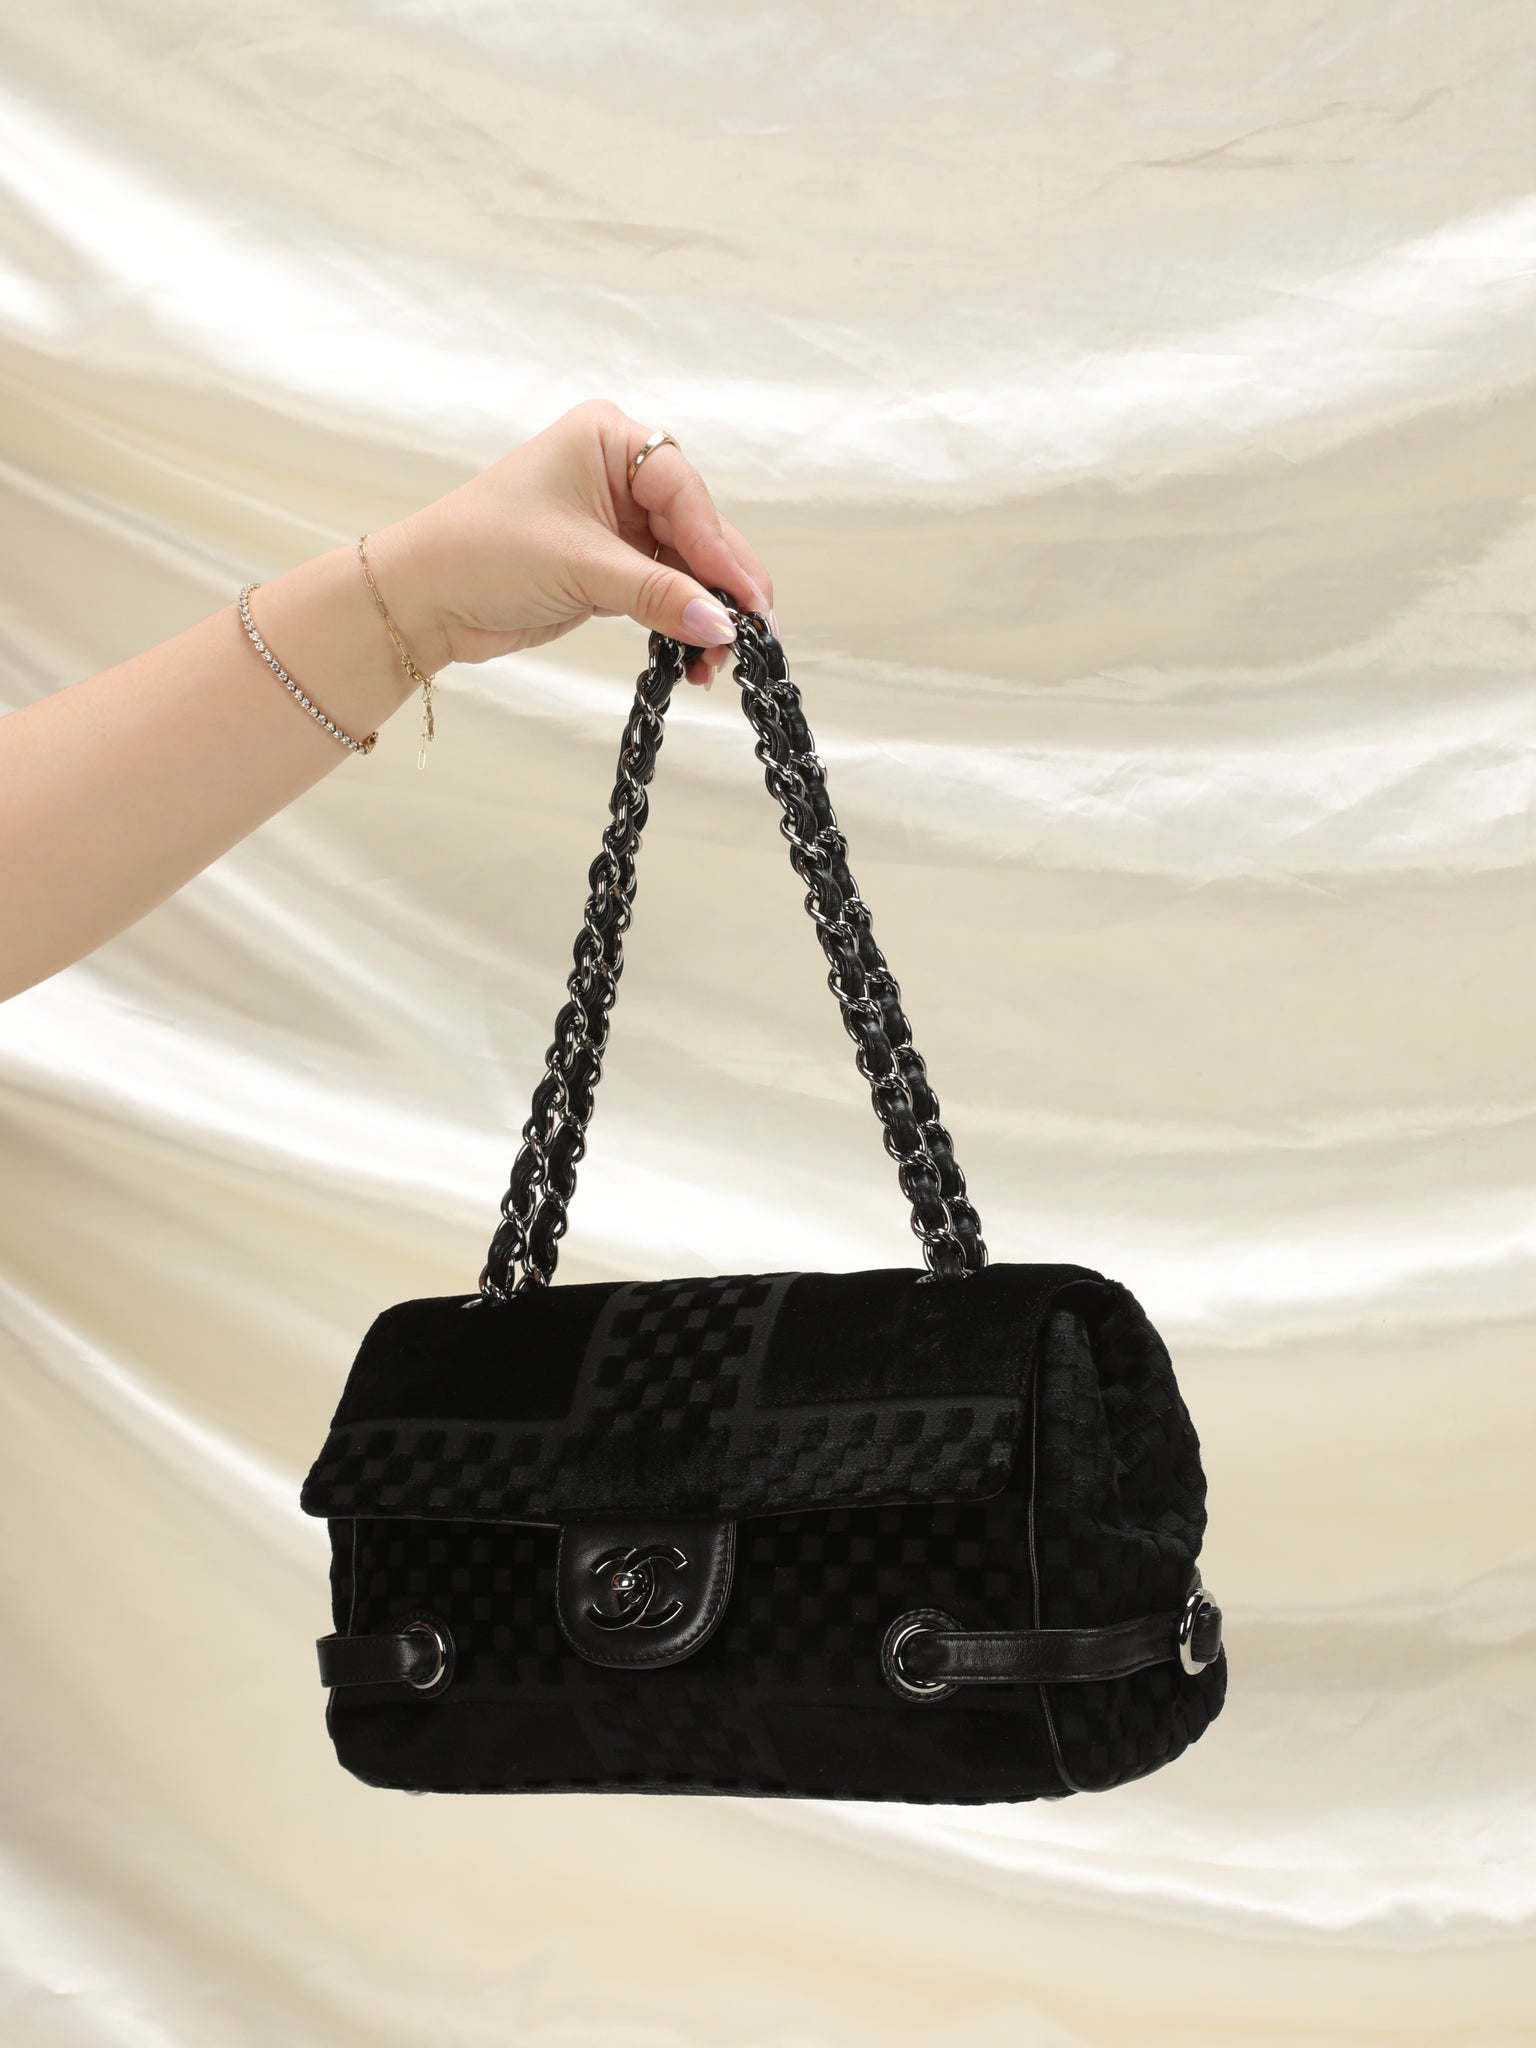 CHANEL Velvet Exterior Bags & Handbags for Women